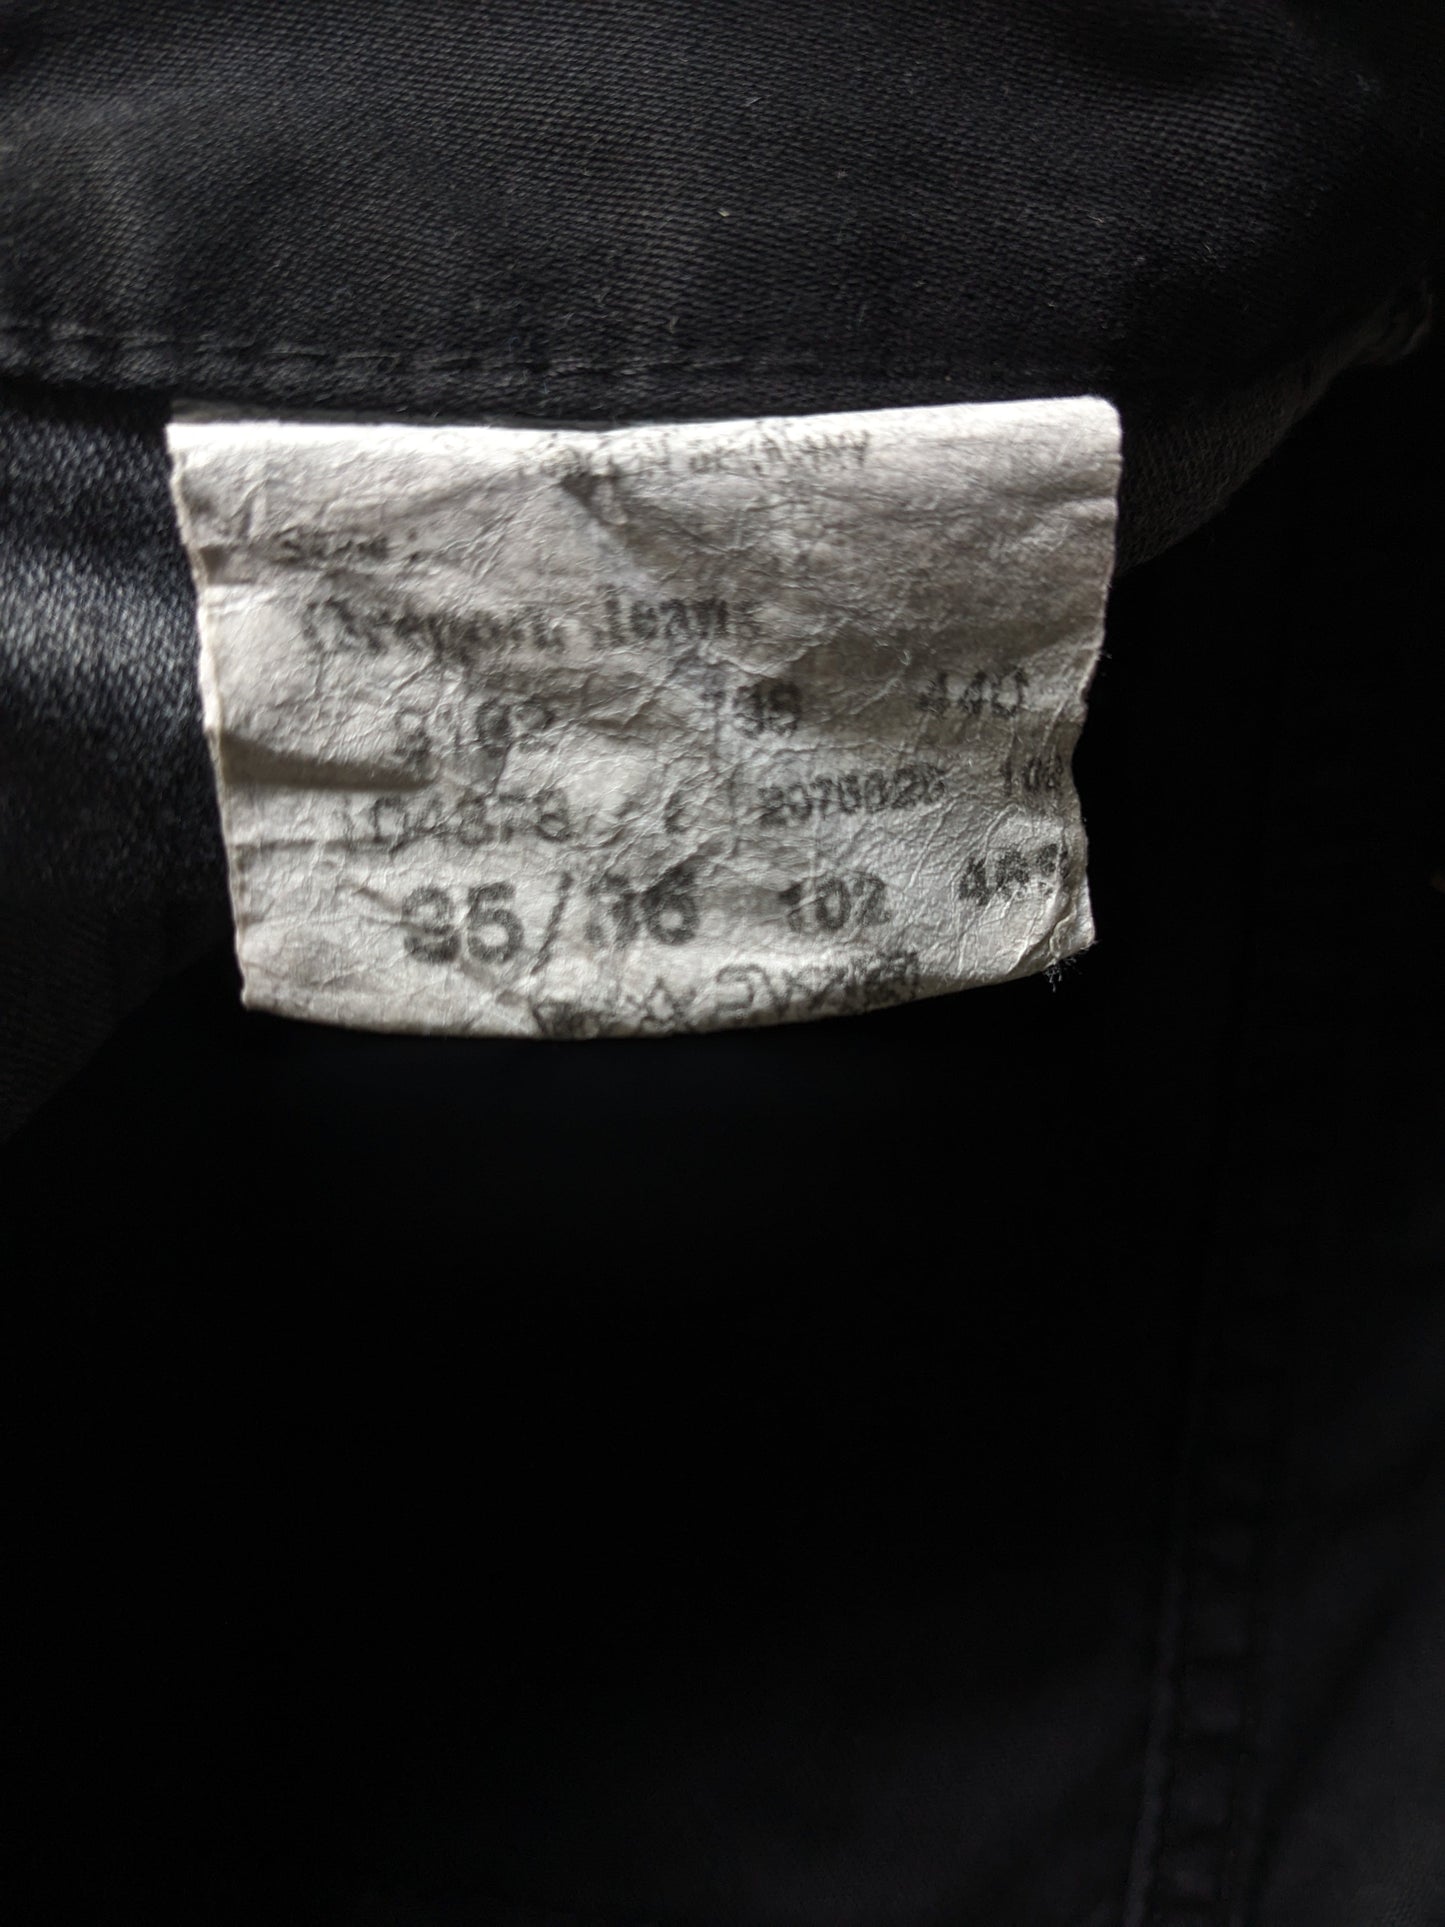 Jeans Mustang * Oregon *. Colorato nero. Taglia W35 - L36.